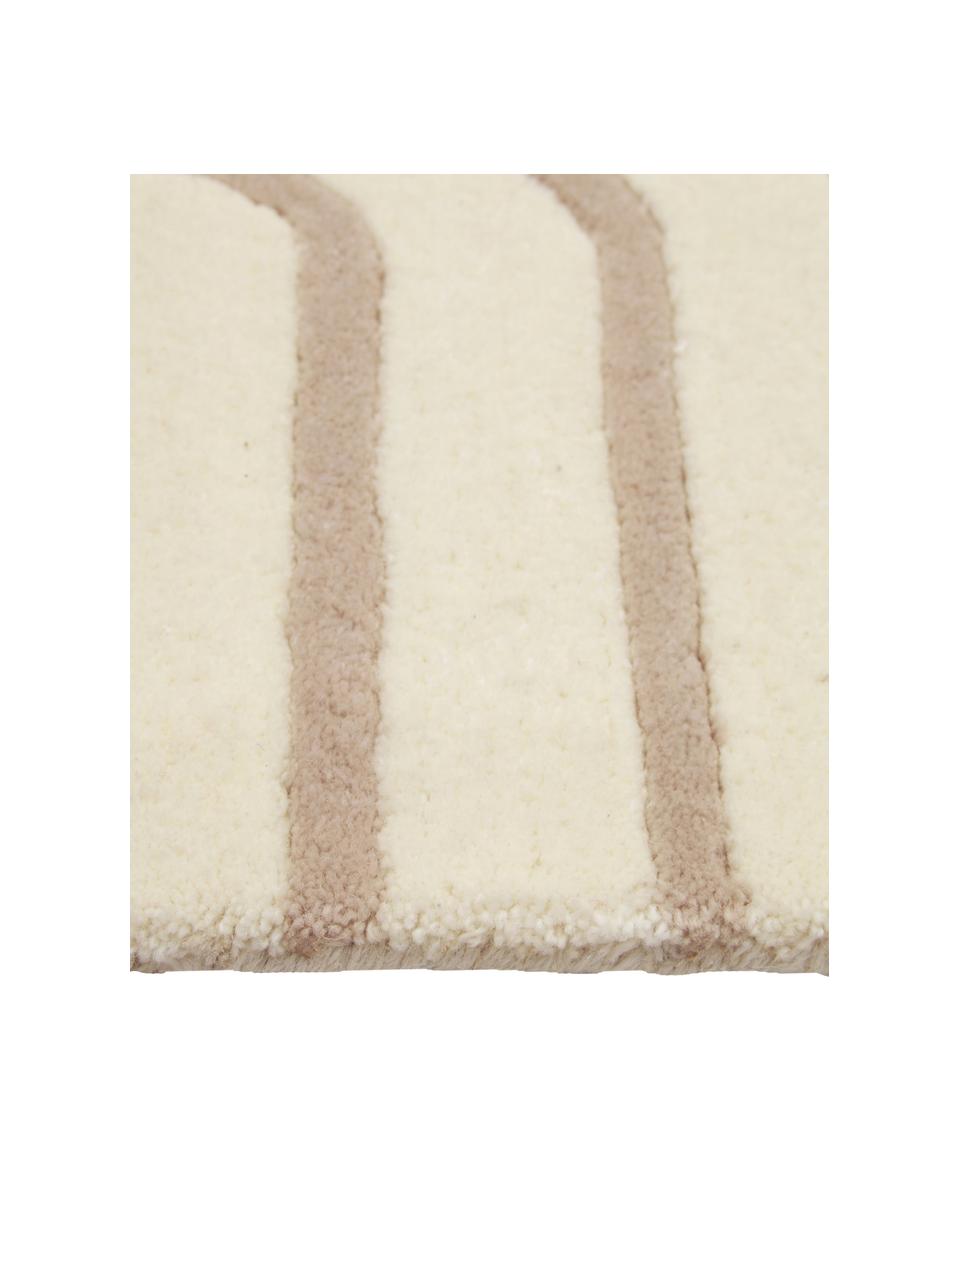 Tapis en laine beige/crème tufté à la main Arne, Beige/crème, larg. 80 x long. 150 cm (taille XS)